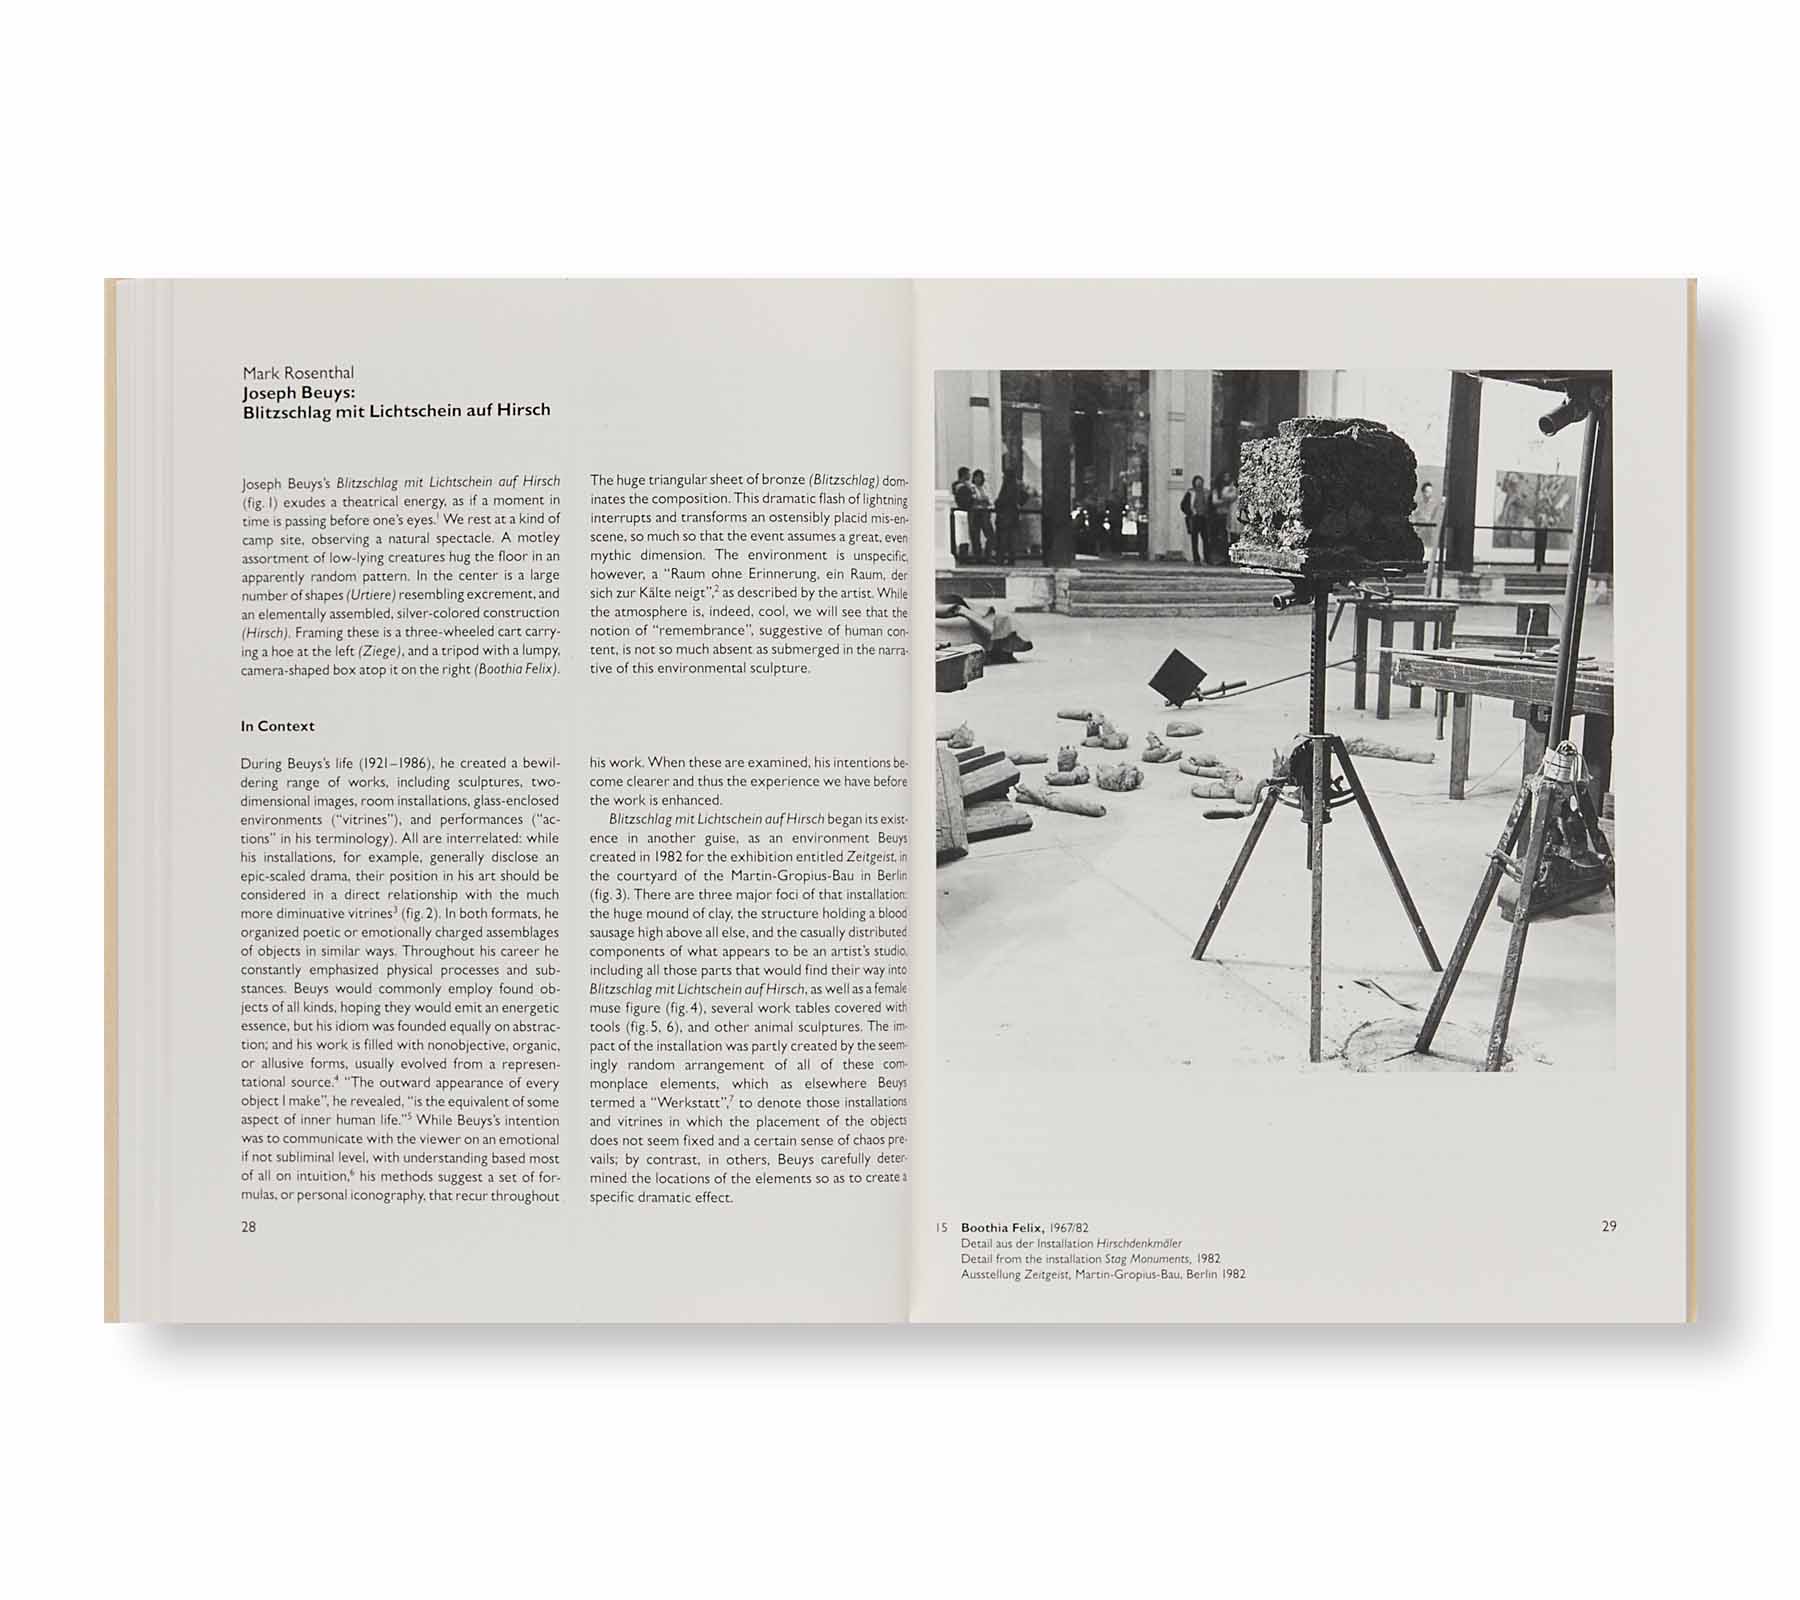 JOSEPH BEUYS – BLITZSCHLAG MIT LICHTSCHEIN AUF HIRSCH by Joseph Beuys